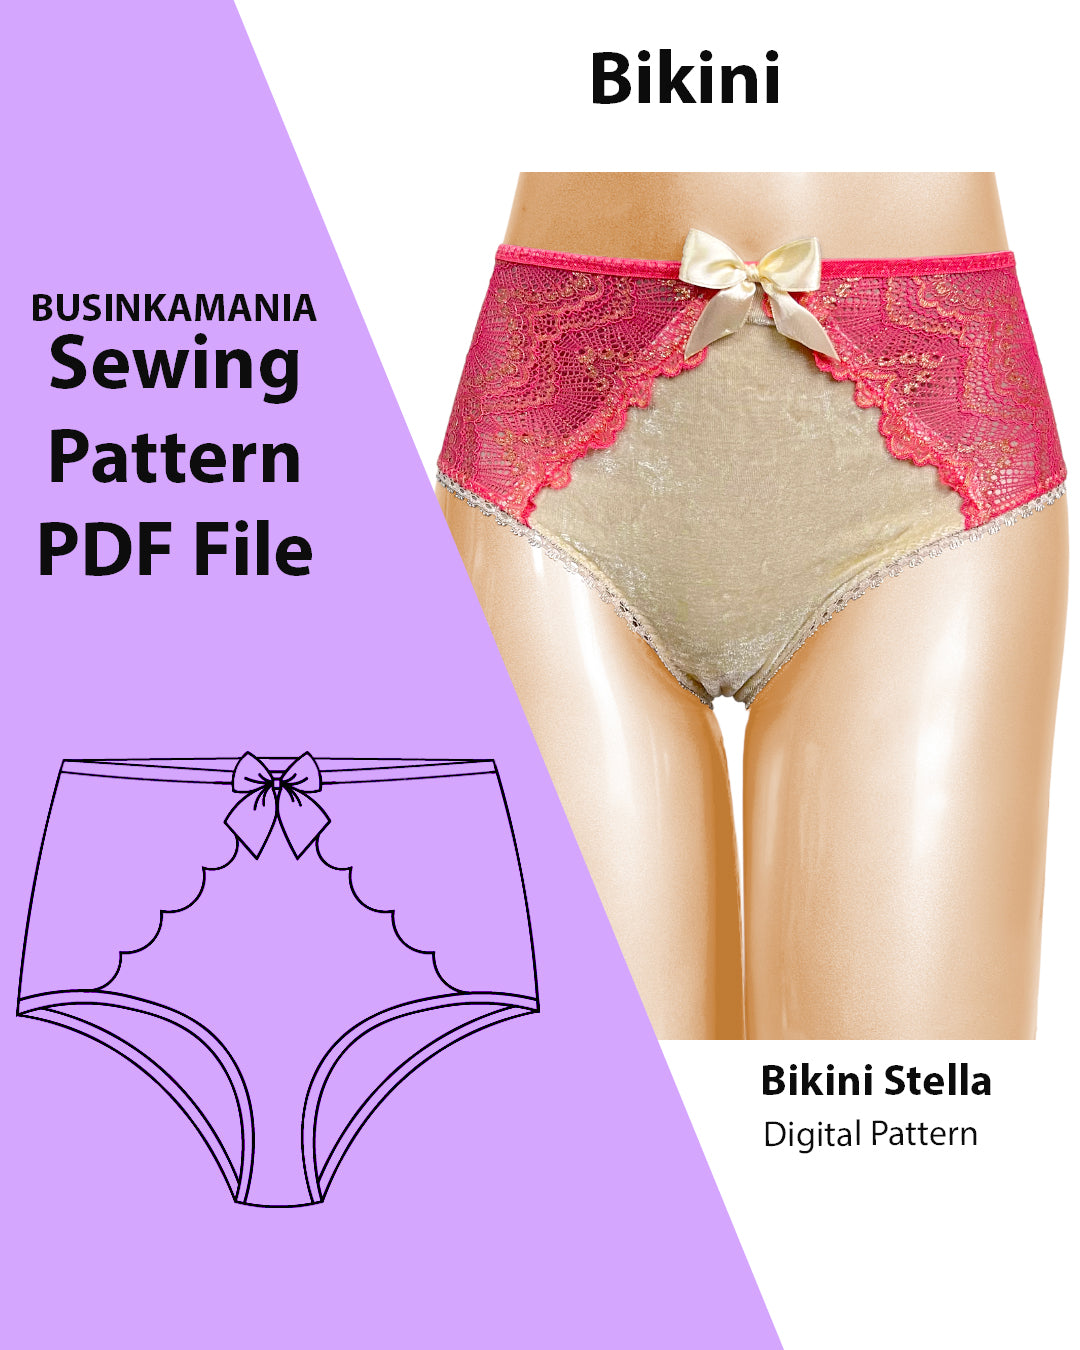 Bikini Stella Sewing Pattern – BusinkaMania